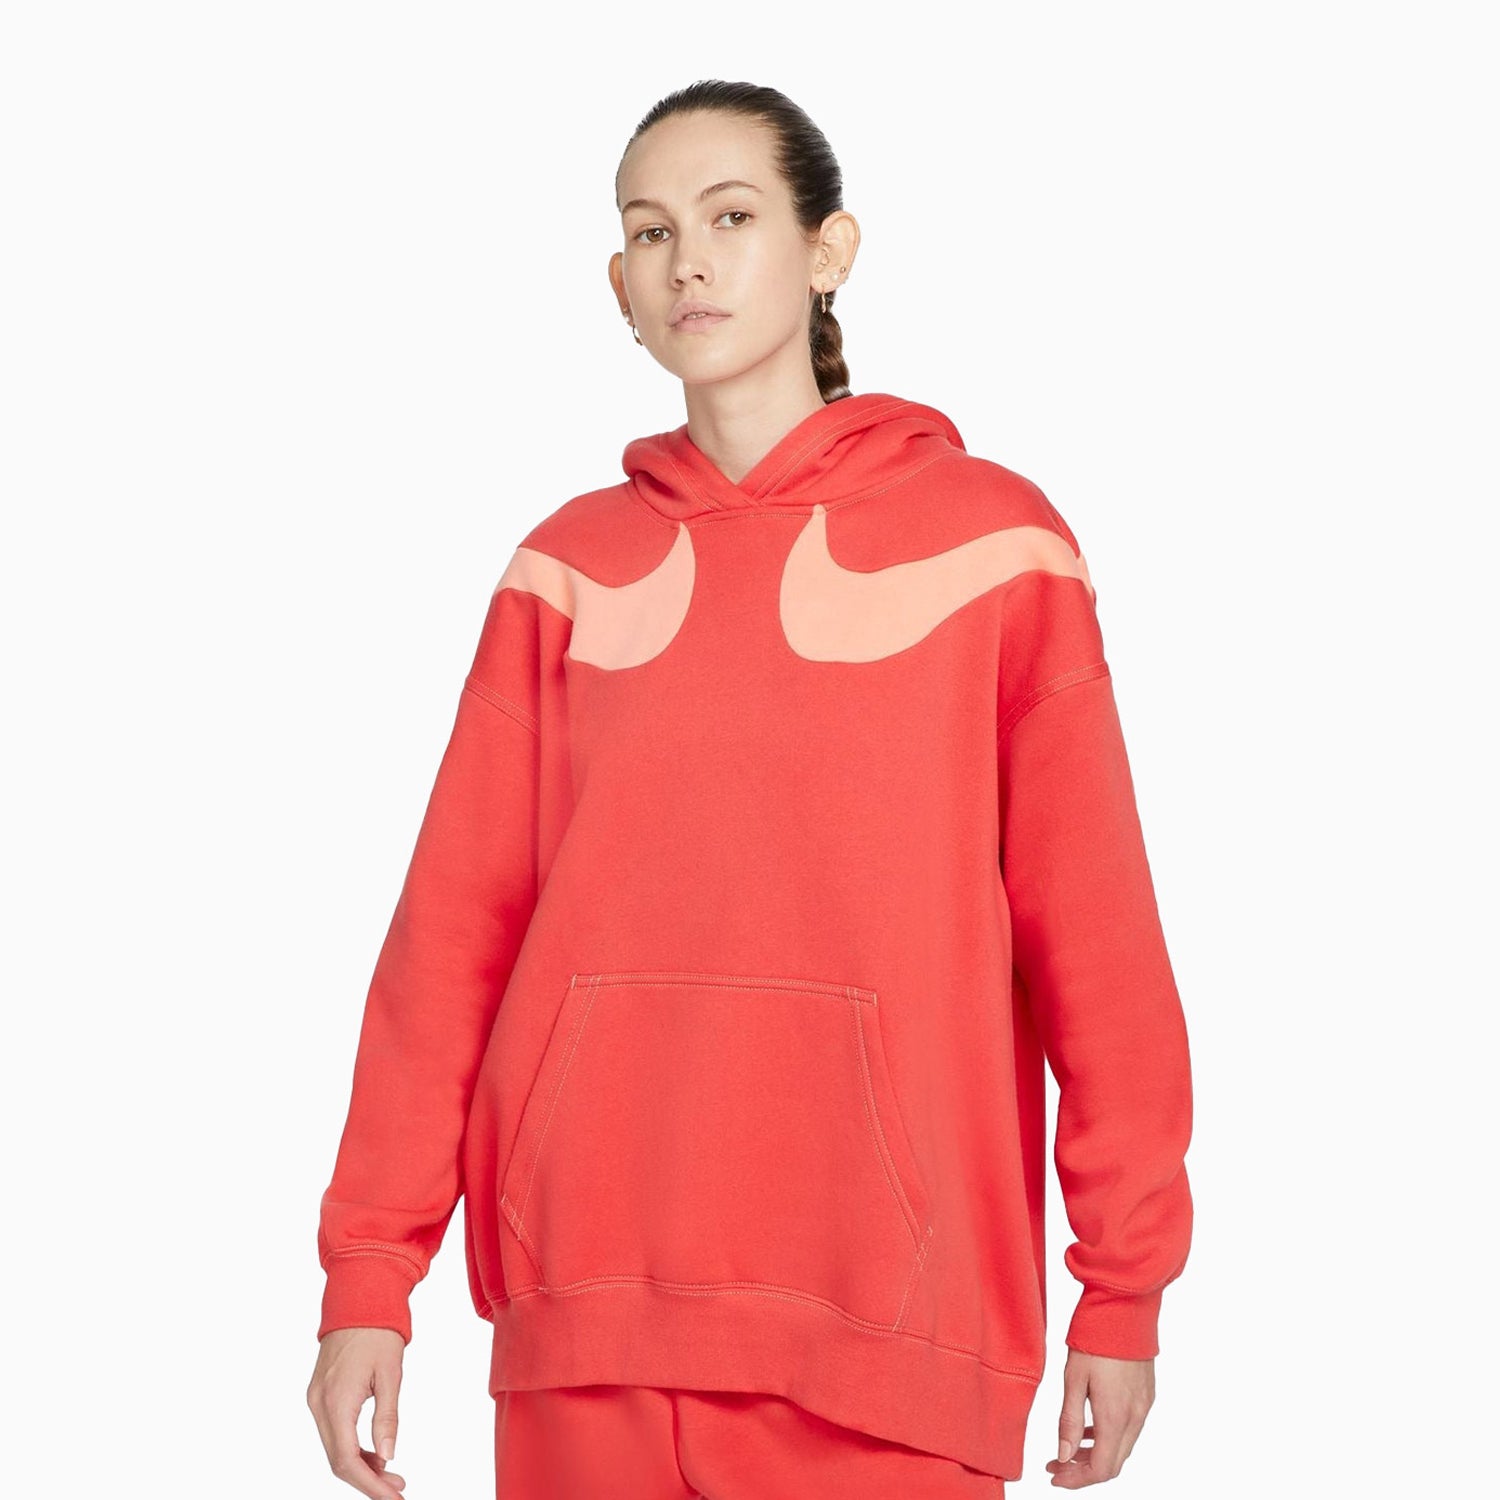 Nike Women's Sportswear Swoosh Jogging Suit